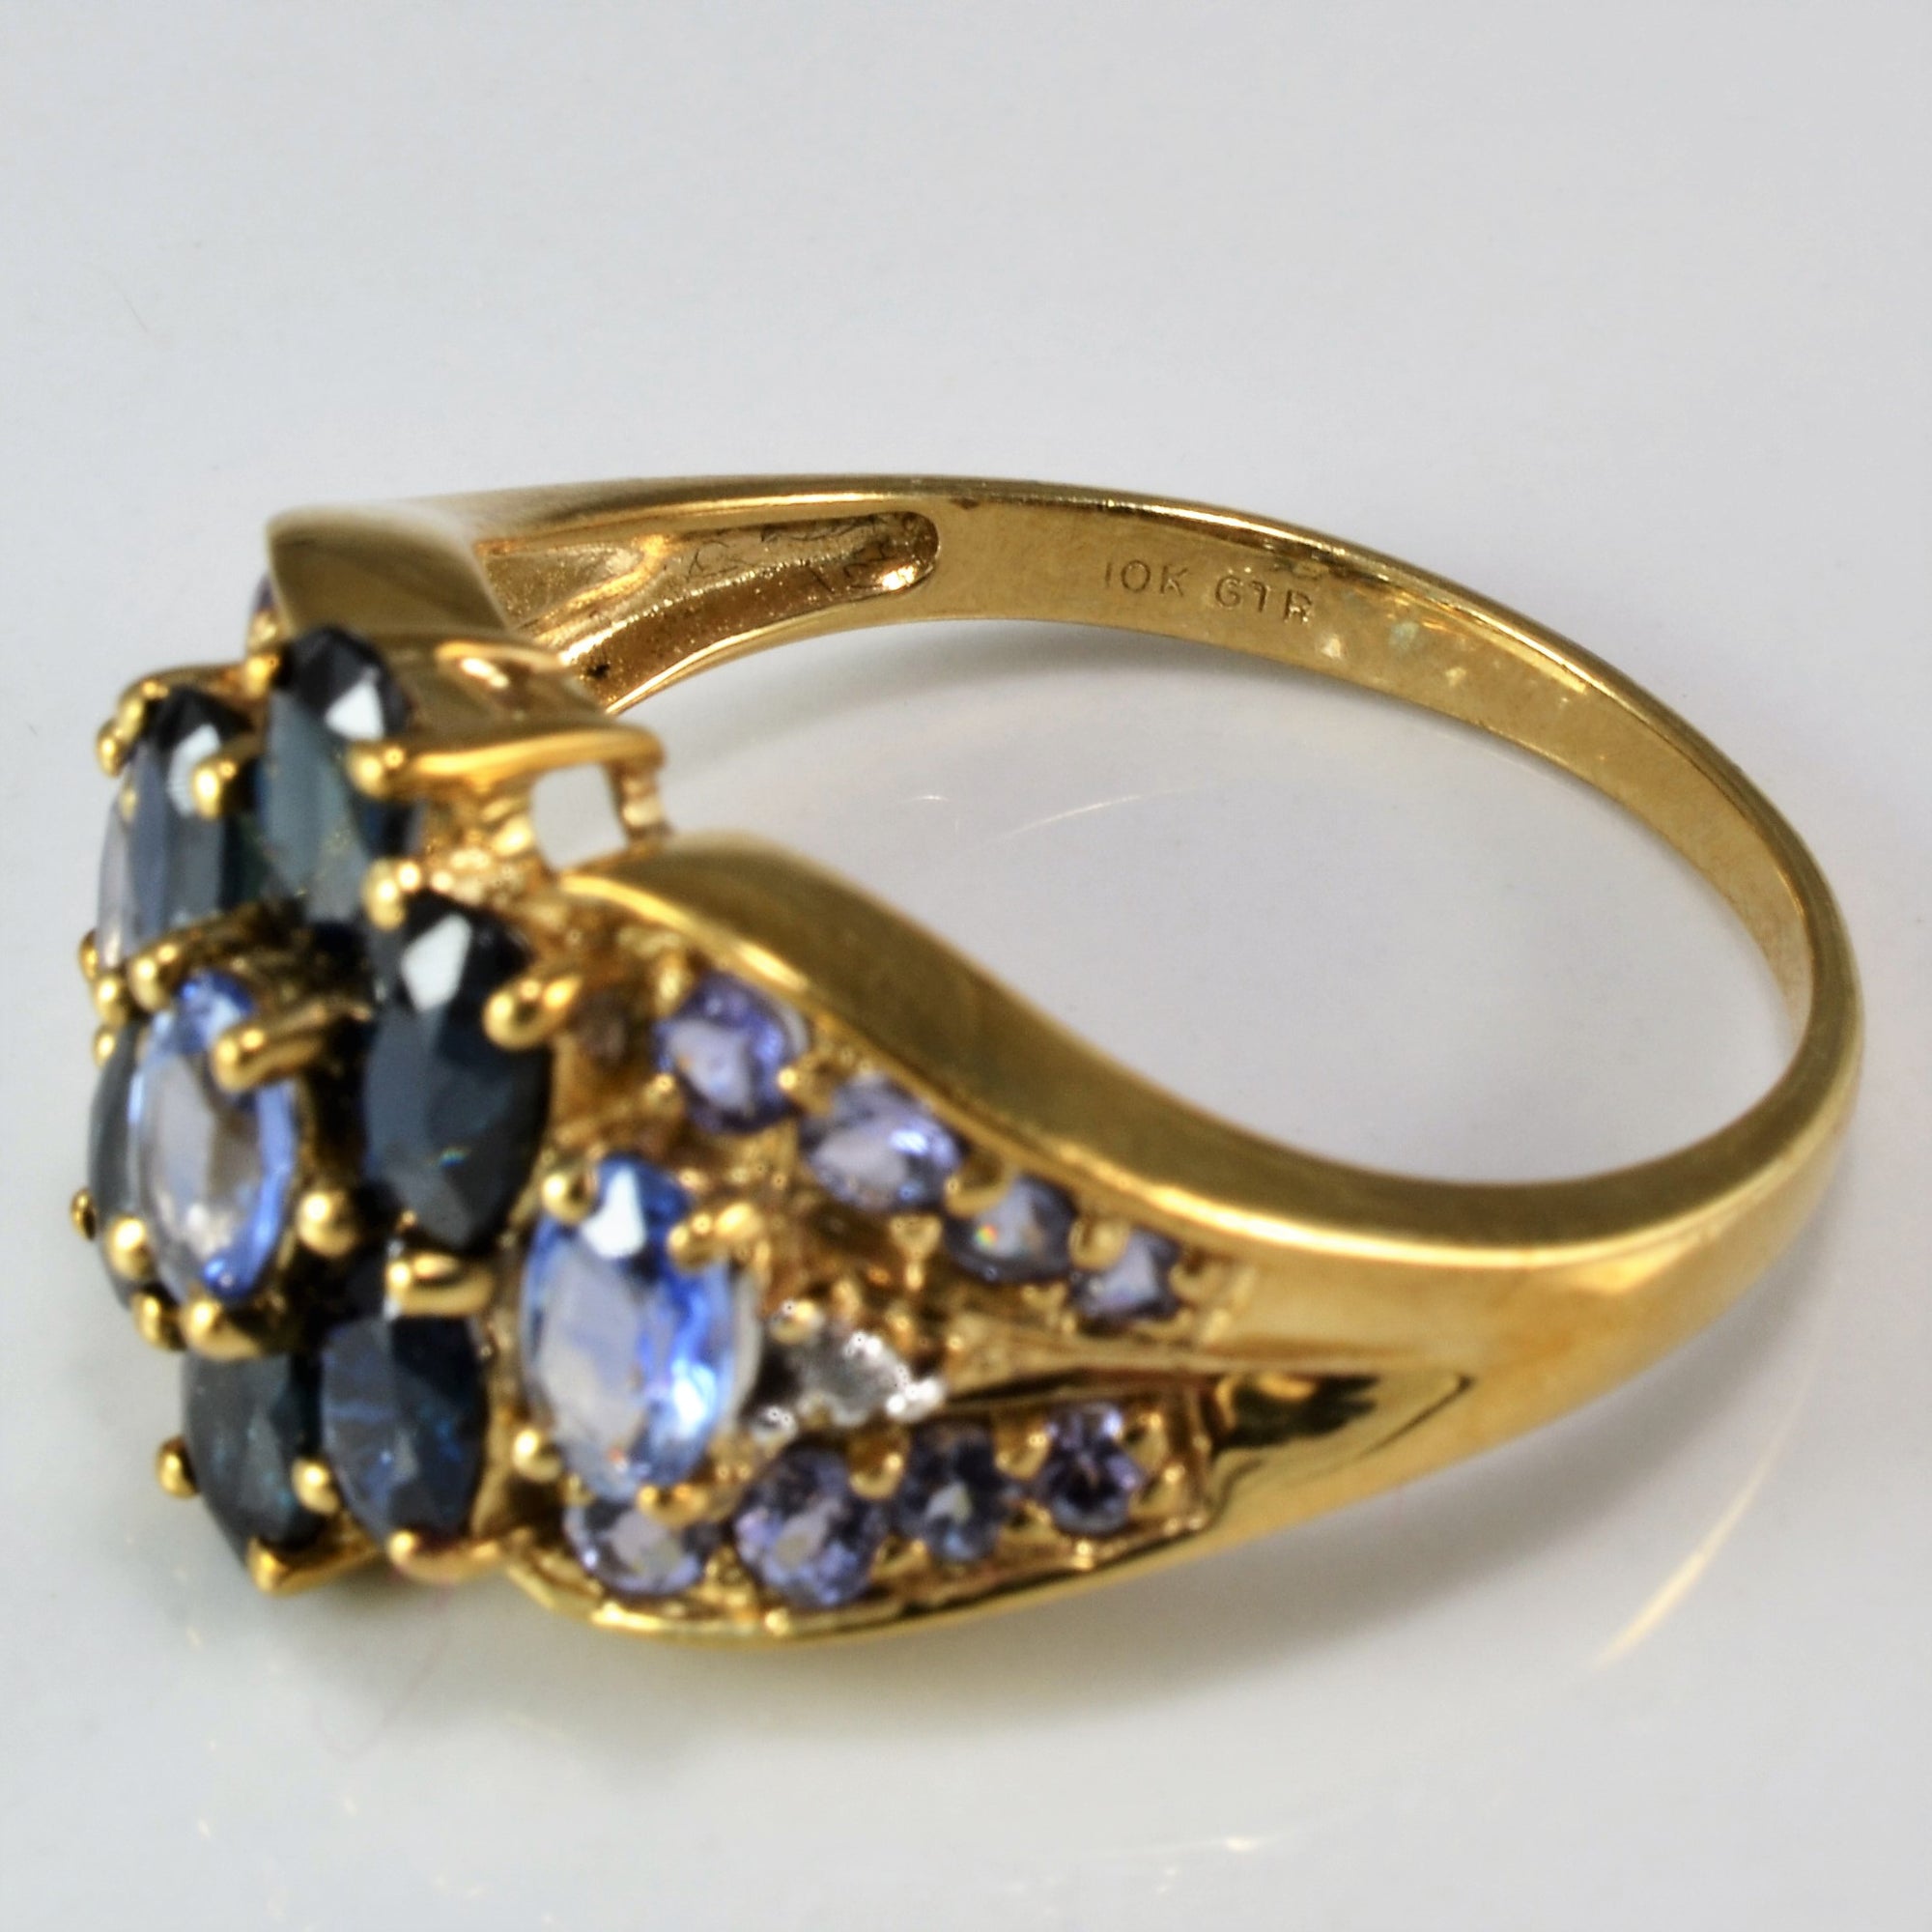 Stunning Sapphire & Tanzanite Ring | 3.00ctw, 0.50ctw, 0.02ctw | SZ 10 |